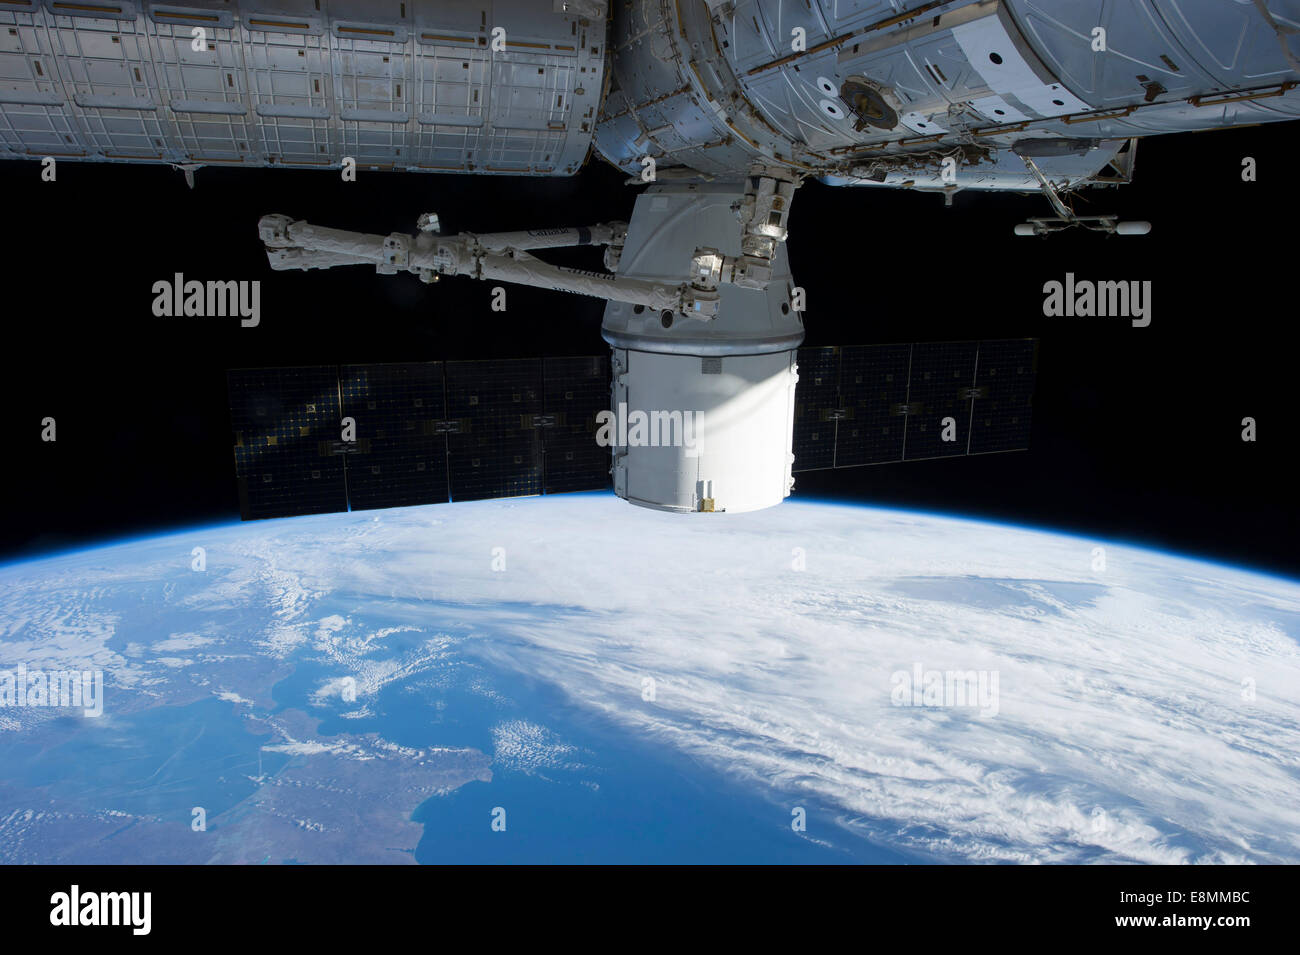 3 marzo 2013 - docking di SpaceX Dragon per la Stazione Spaziale Internazionale al di sopra di una nuvola coprì la terra. Foto Stock